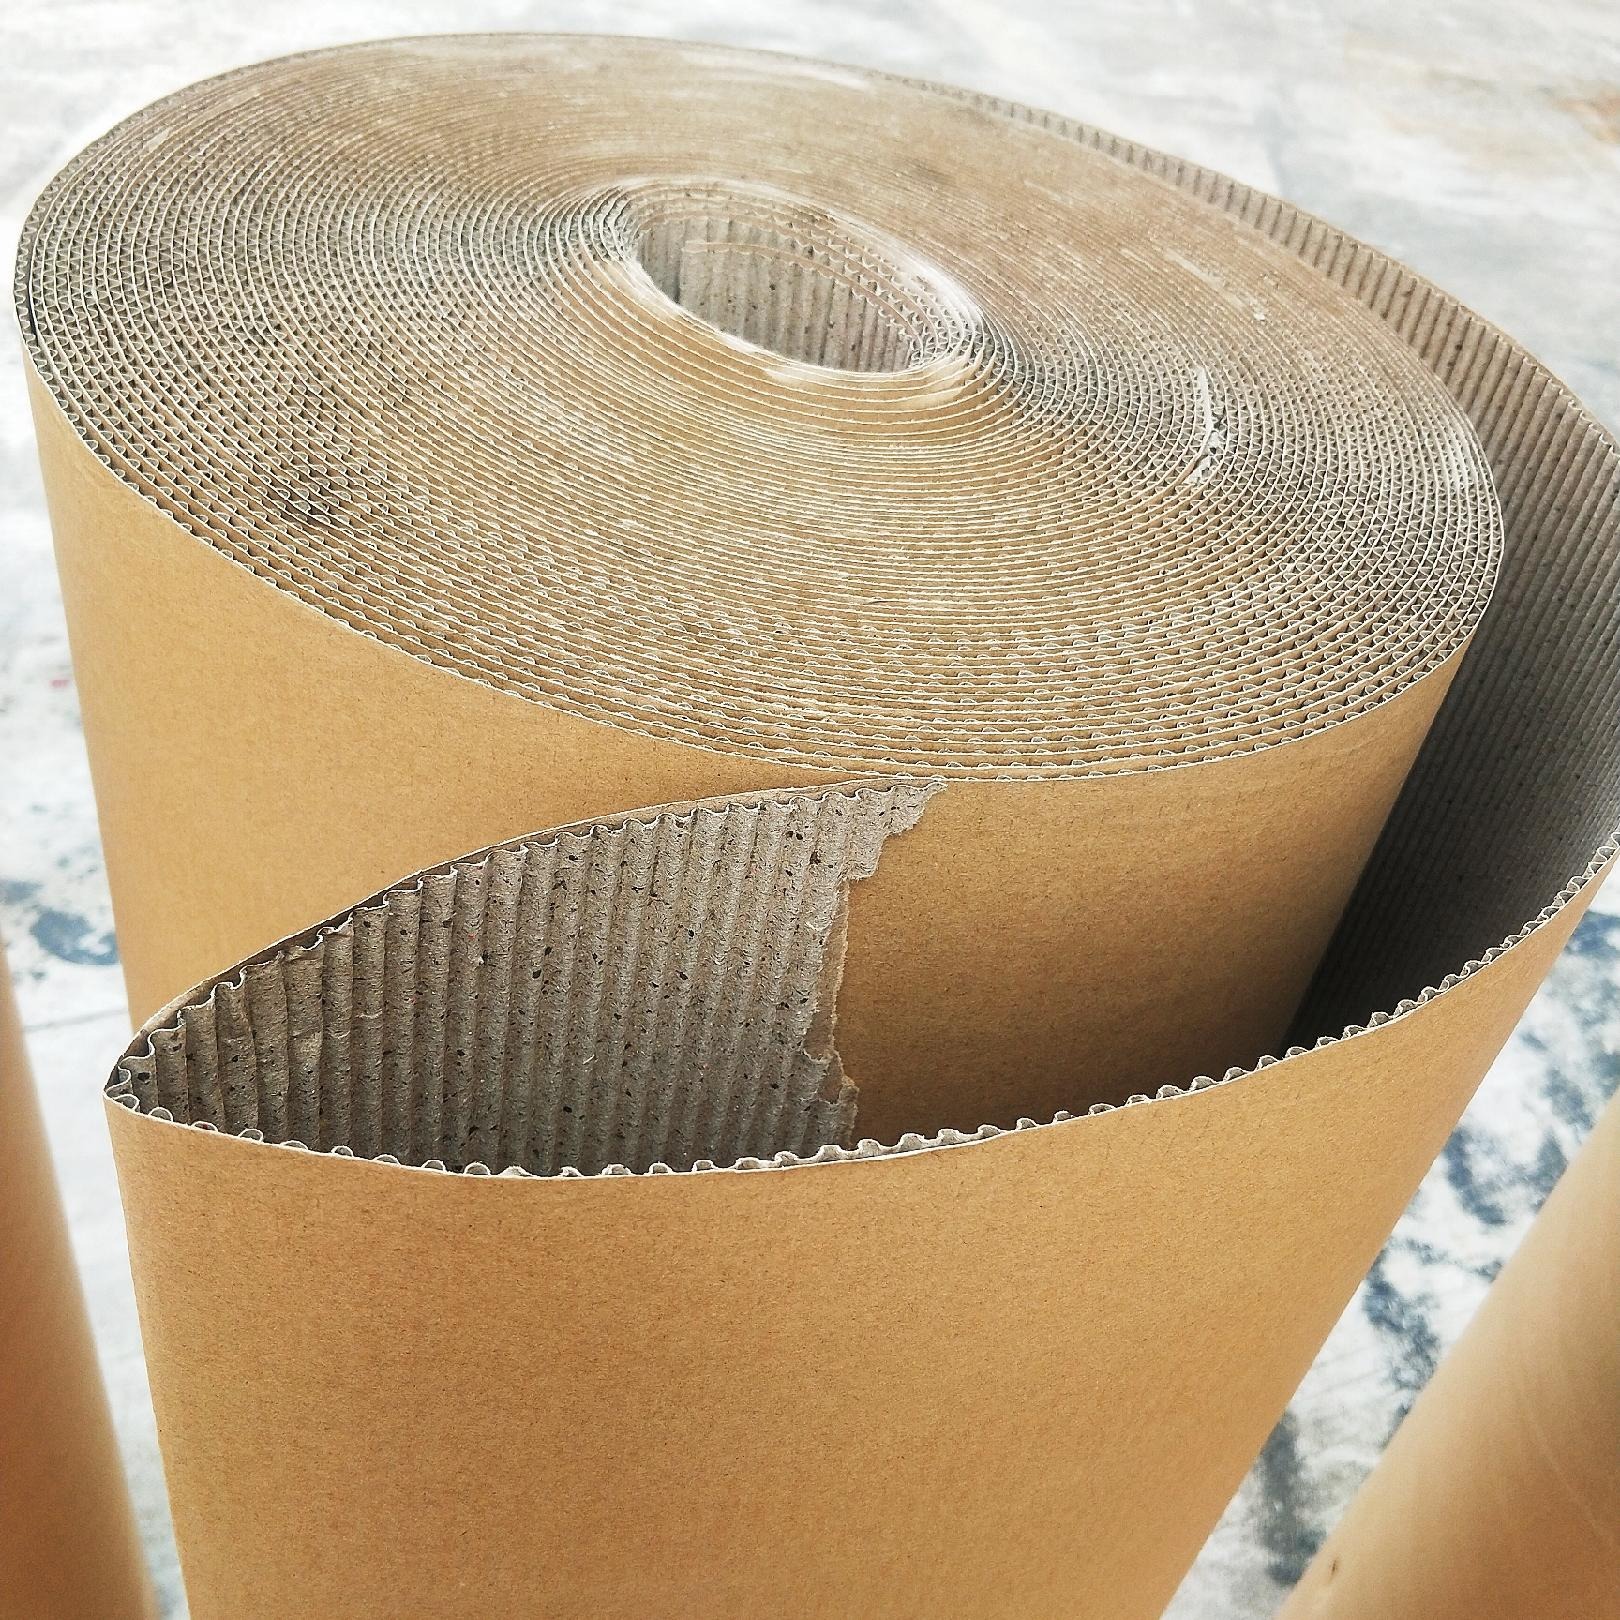 清远瓦楞纸皮 家具包装纸 打包卷纸1.4米双层瓦楞见坑纸 清远印字纸皮定做 纸皮厂